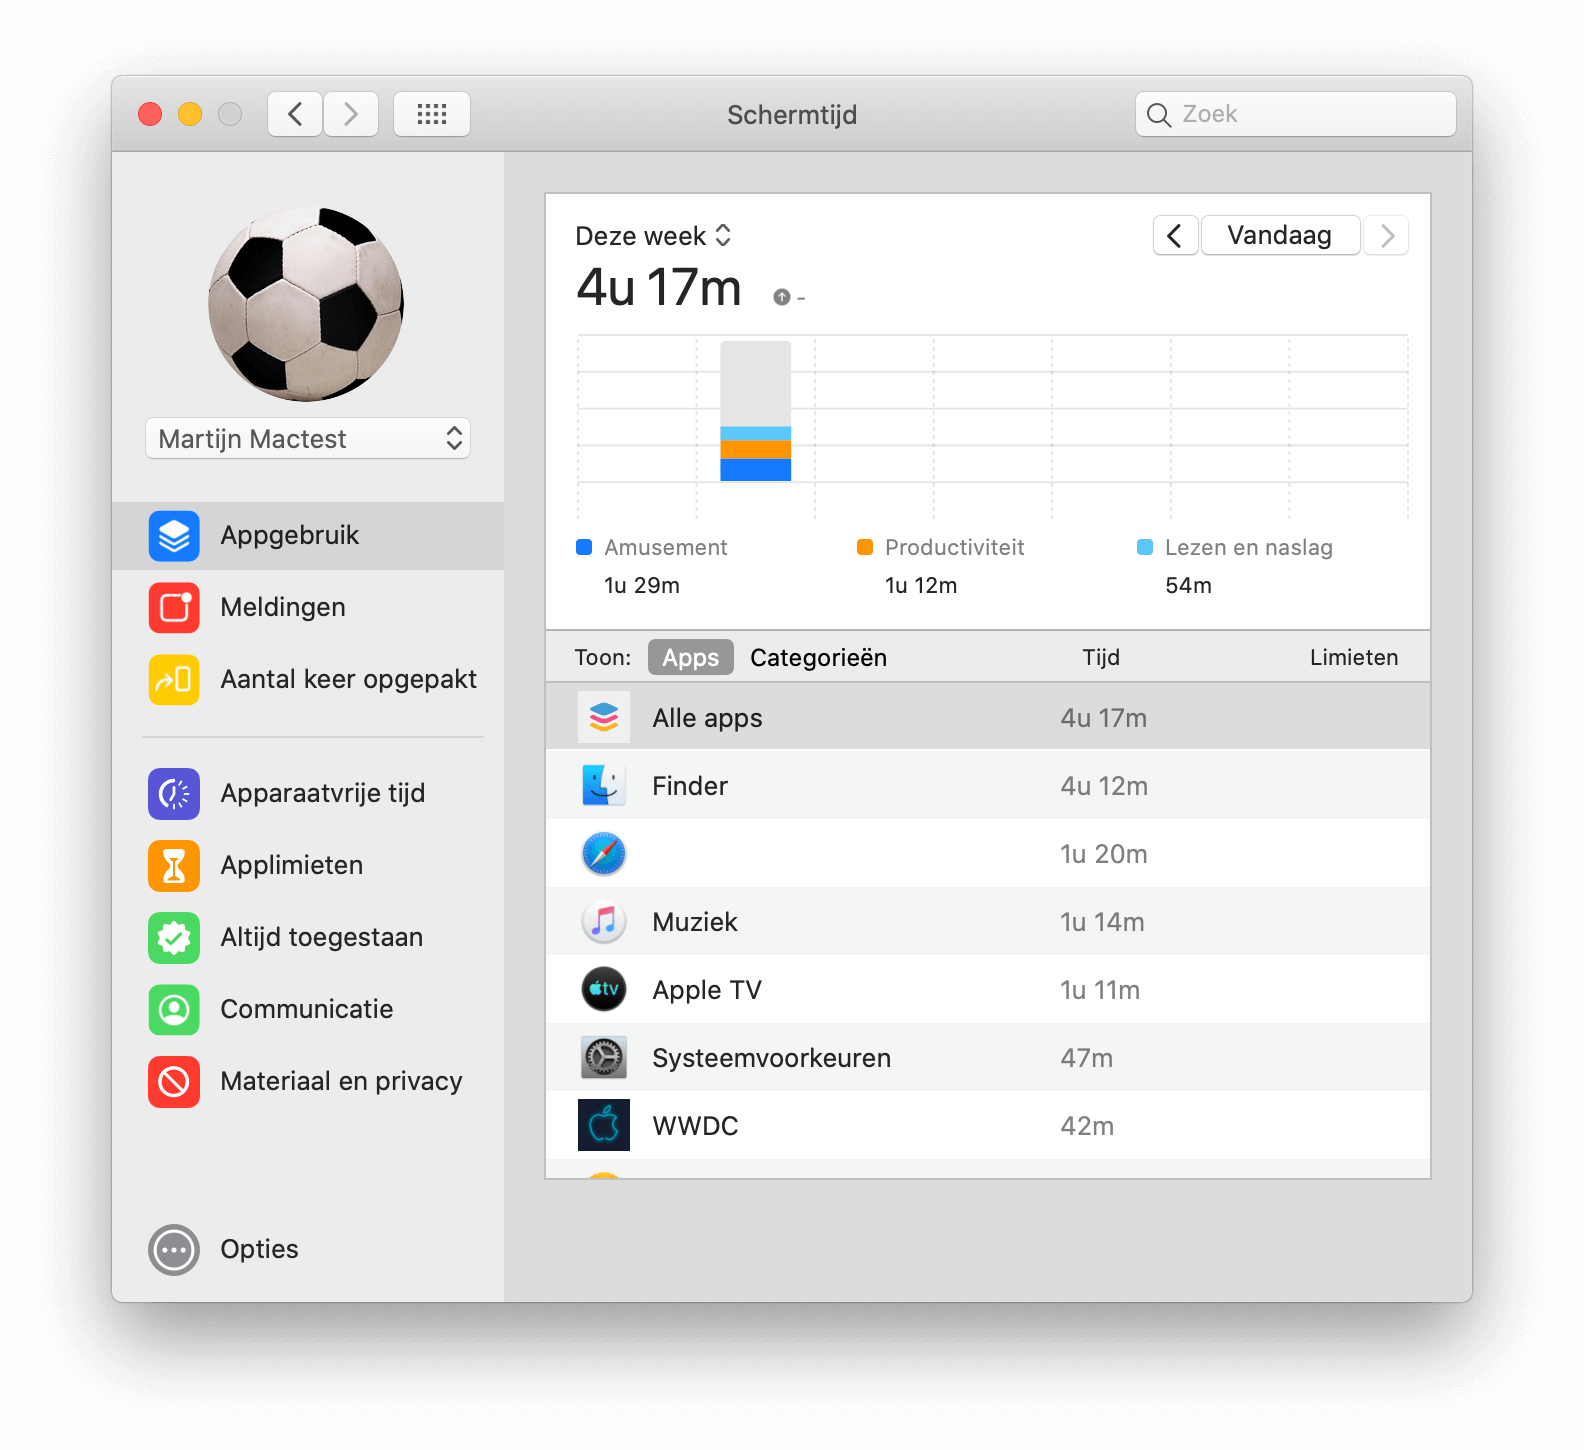 Schermtijd laat je op de Mac ook zien hoe veel tijd je doorbrengt achter je computer